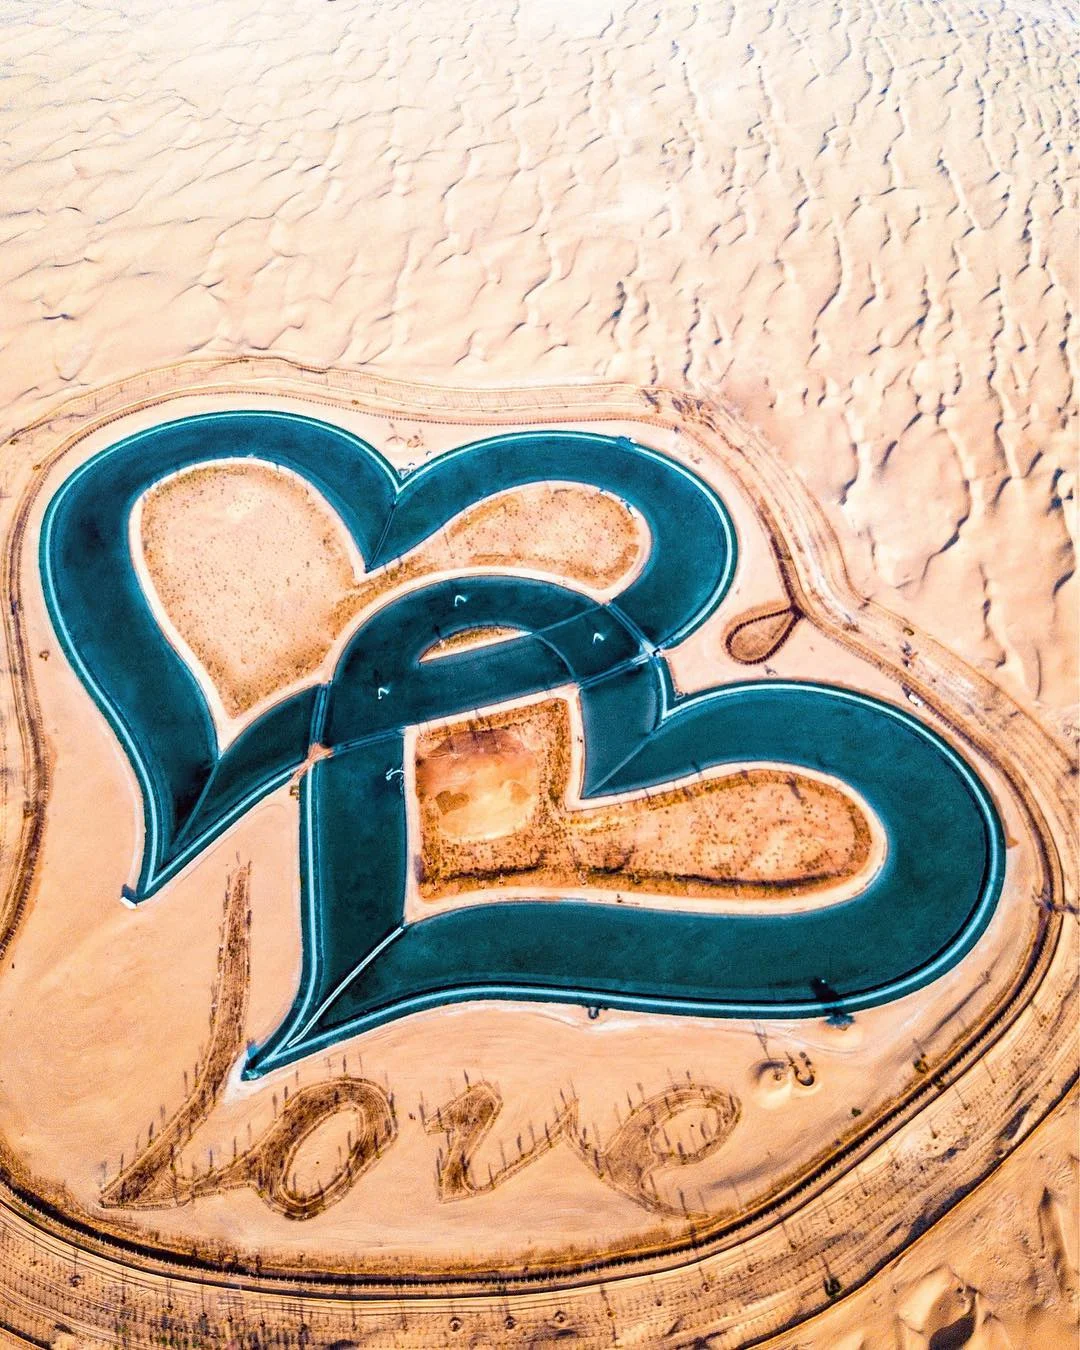 В Дубае появилось озеро в форме переплетенных сердец, которое поражает своей красотой - фото 413185